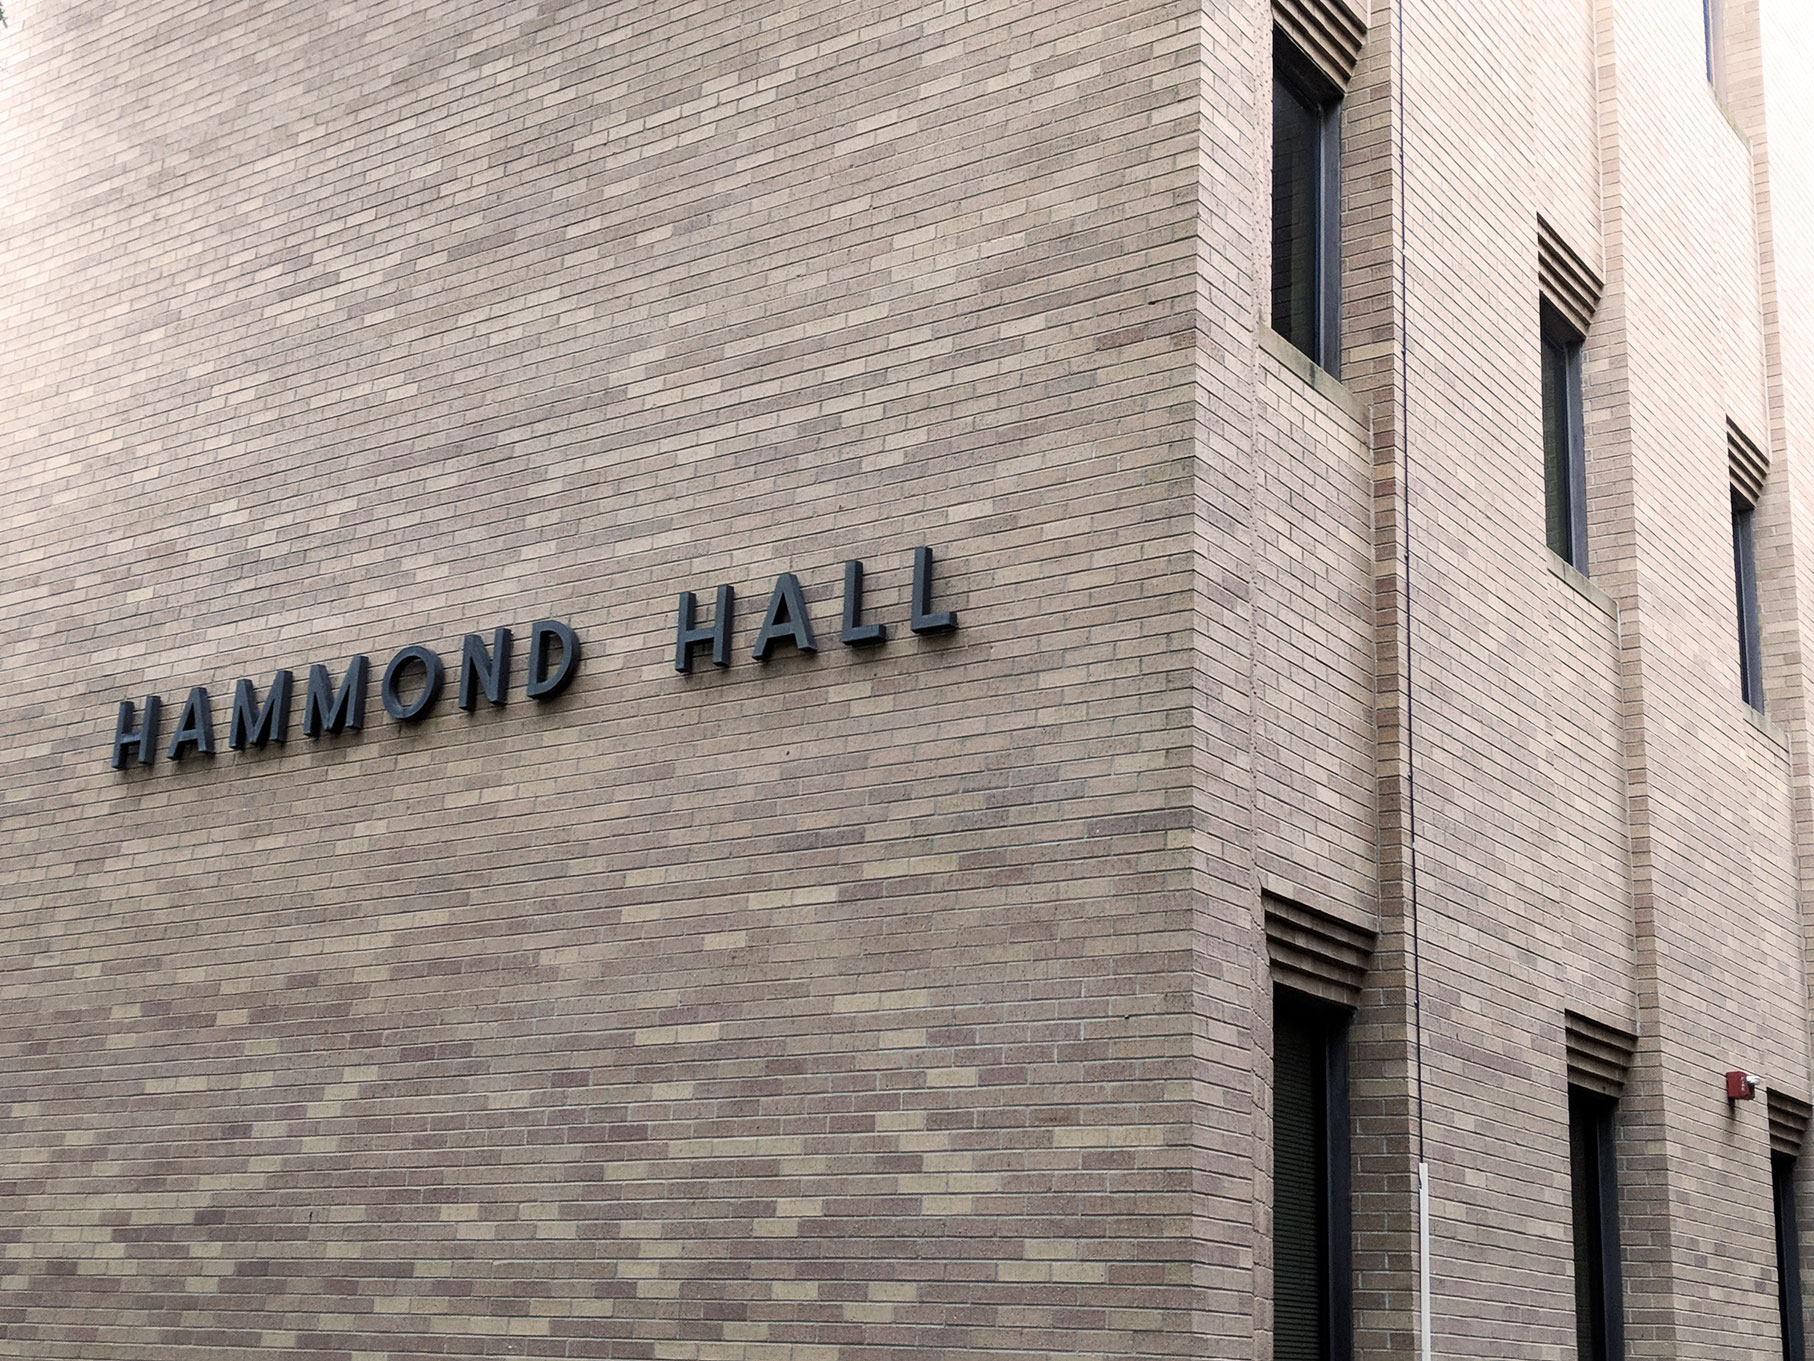 Hammond Hall